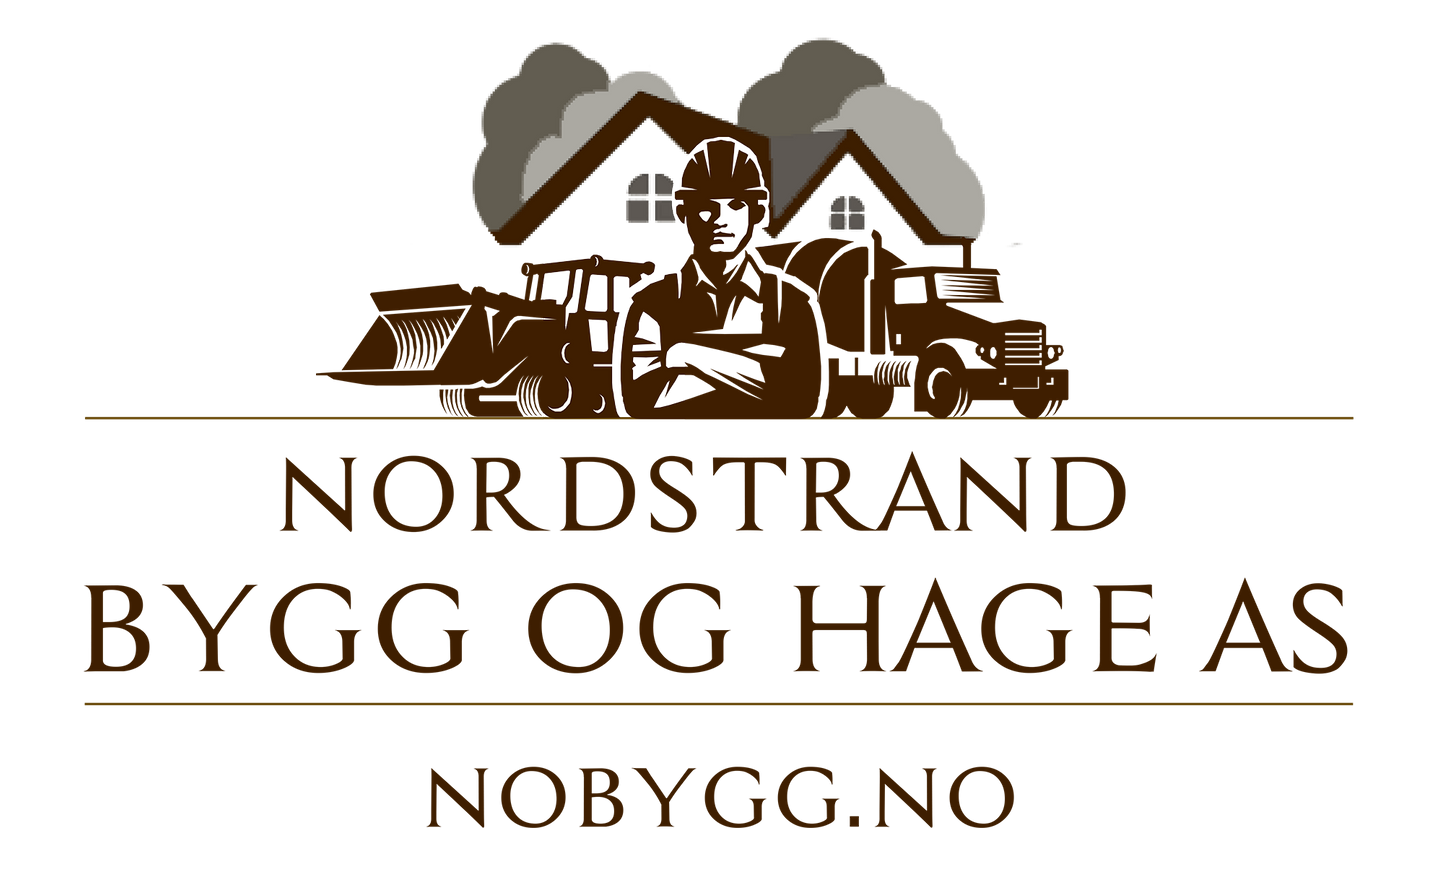 Nordstrand Bygg og Hage AS